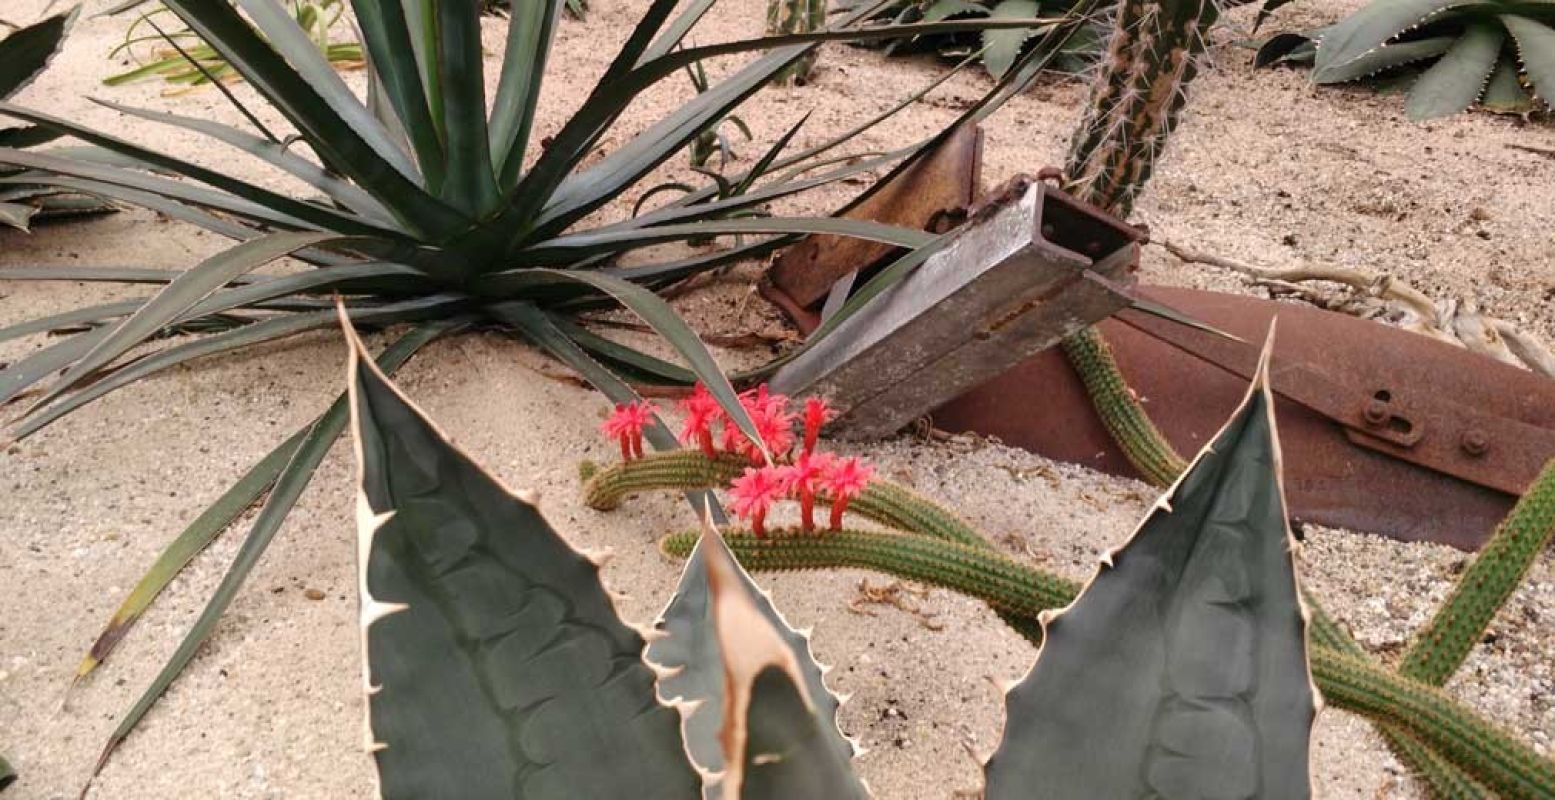 Cactussen dor en dood? Echt niet! Sommigen krijgen prachtige bloemen. Foto's: Linda Morren.